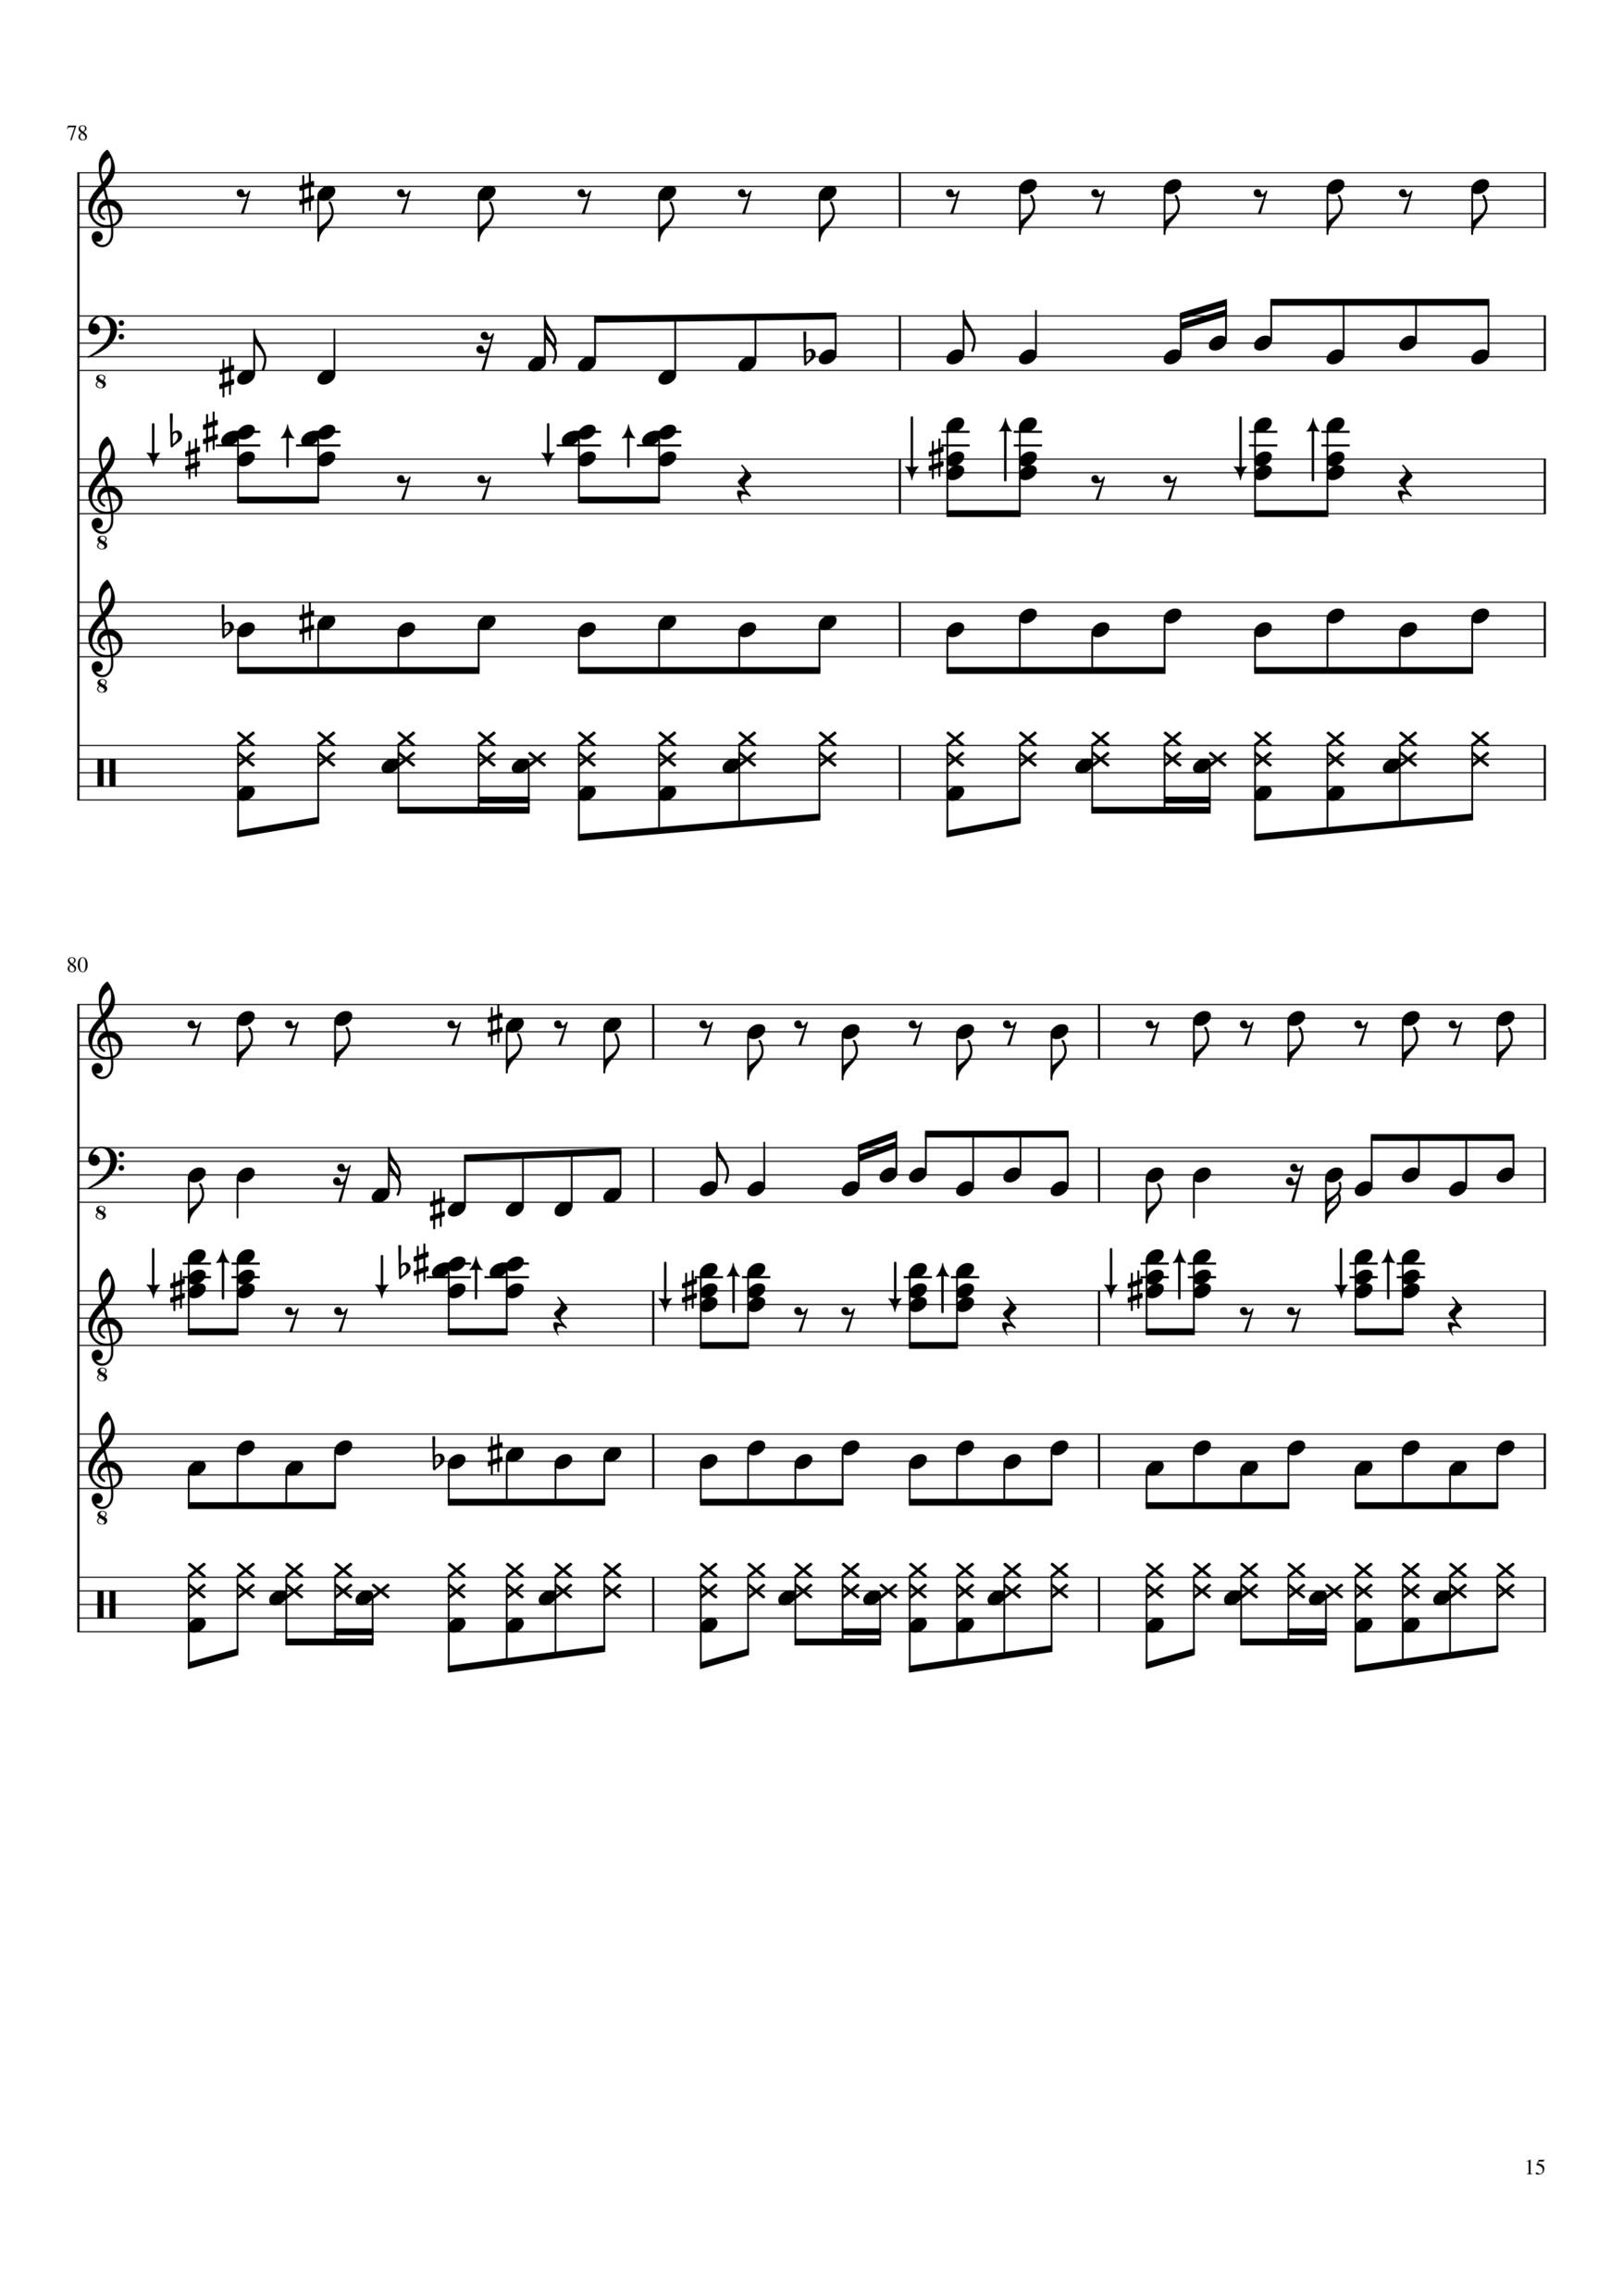 Vechnaya lyubov slide, Image 15